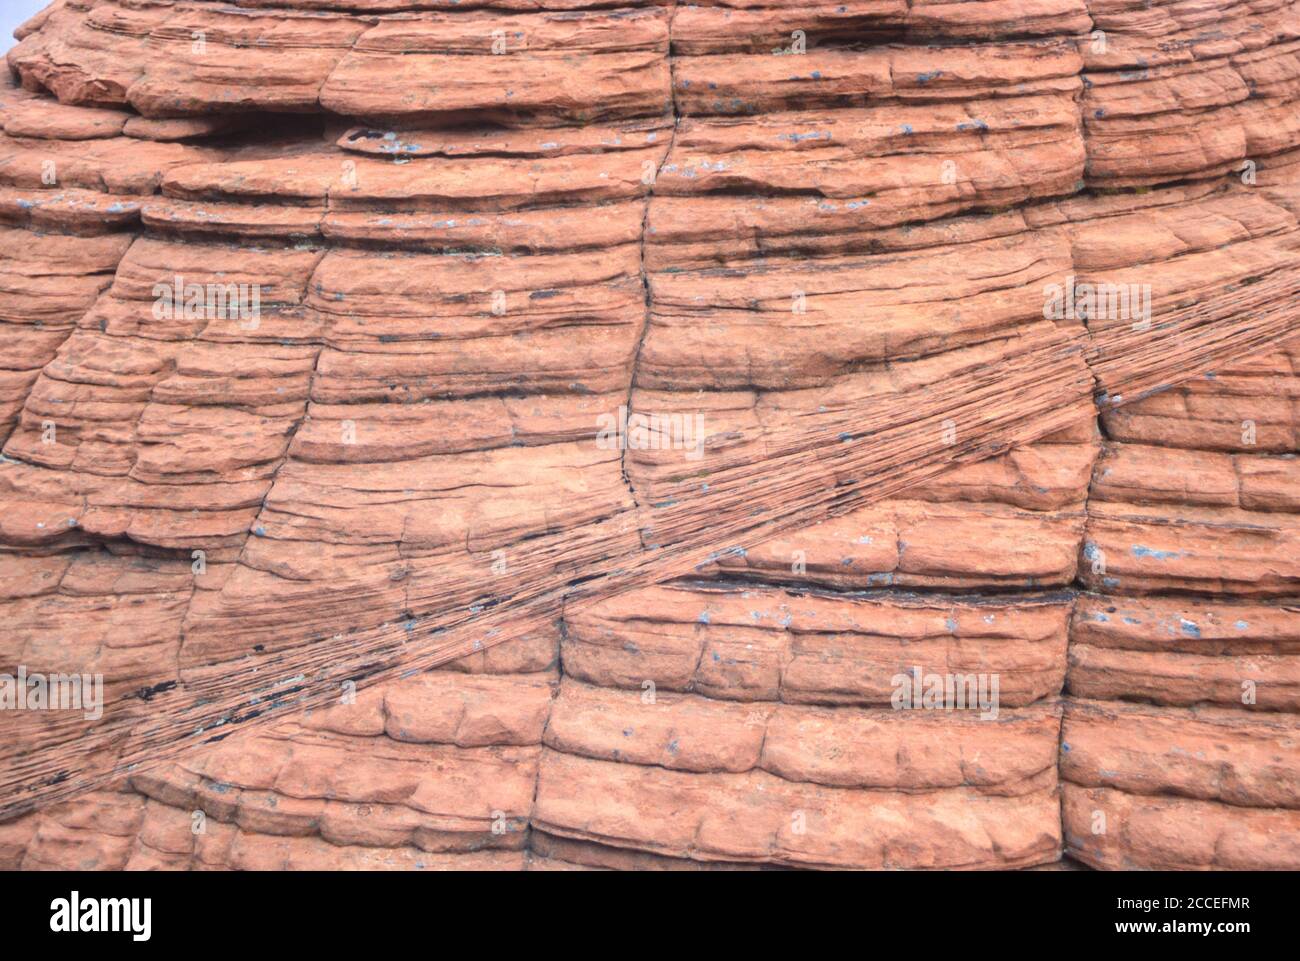 Geologia. Striature rocciose e bande. Formazione di alveare, Valle di fuoco, Nevada, Stati Uniti. Foto Stock